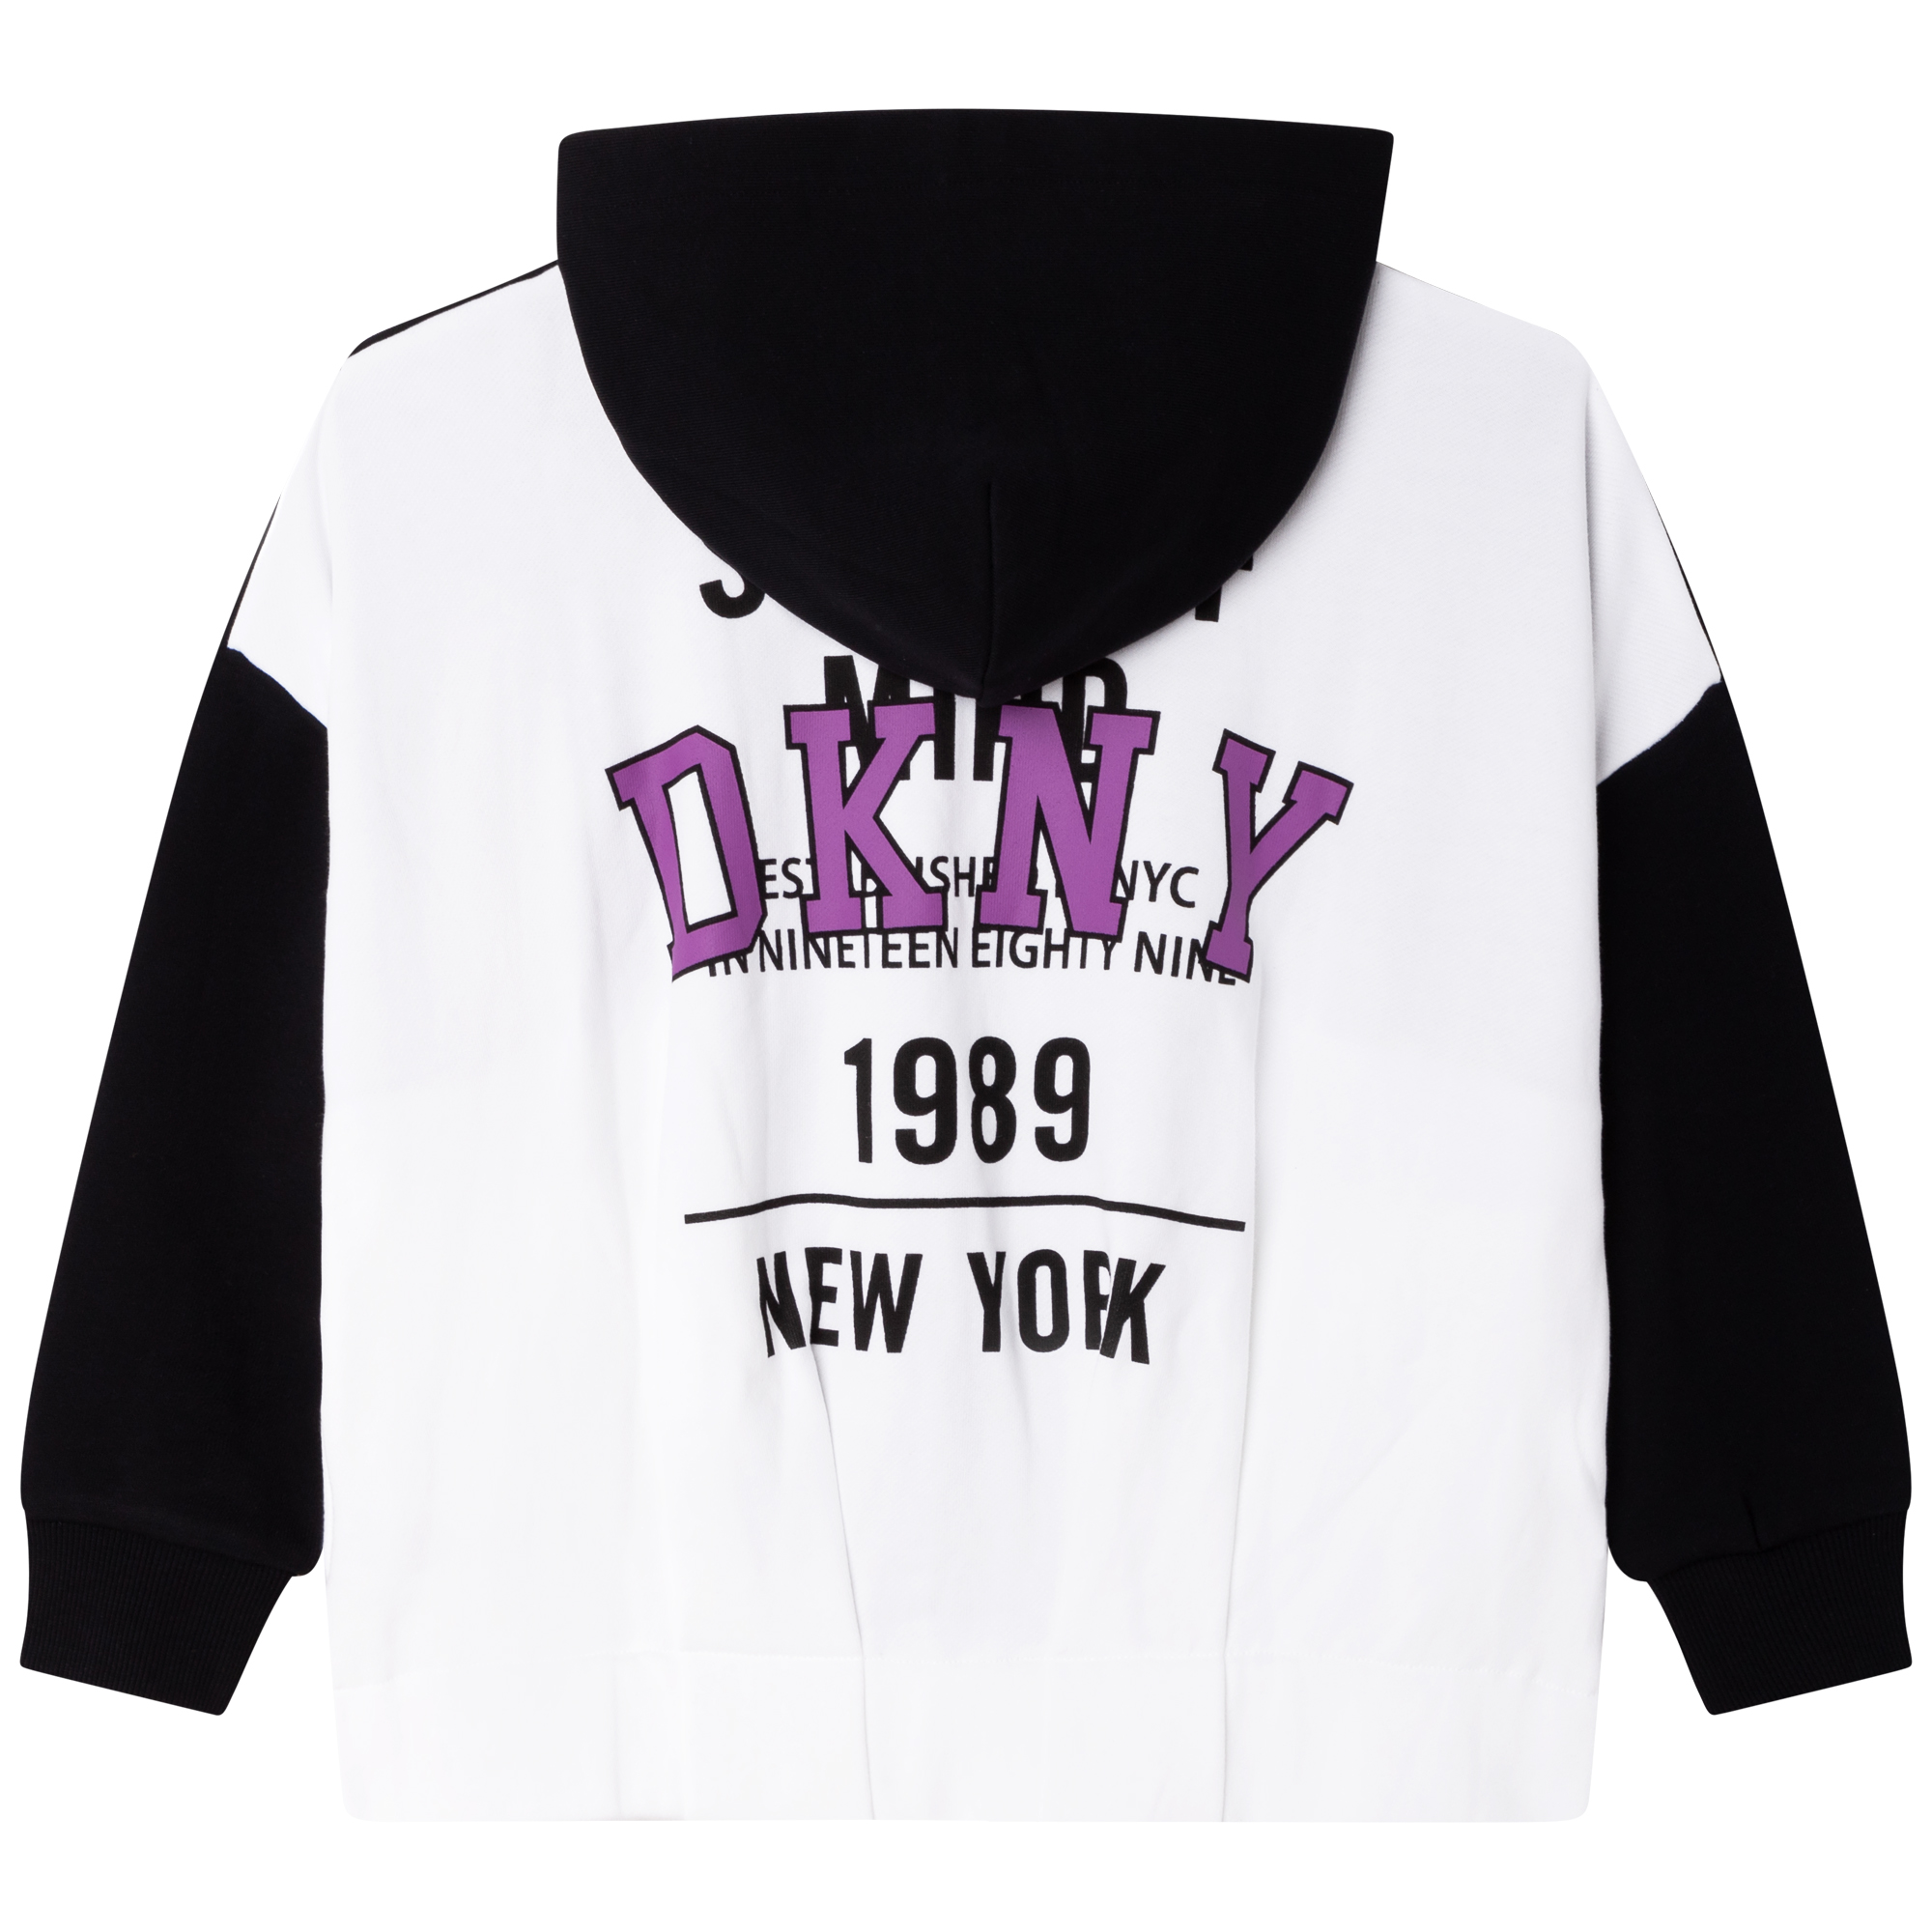 Sweater met rits en capuchon DKNY Voor